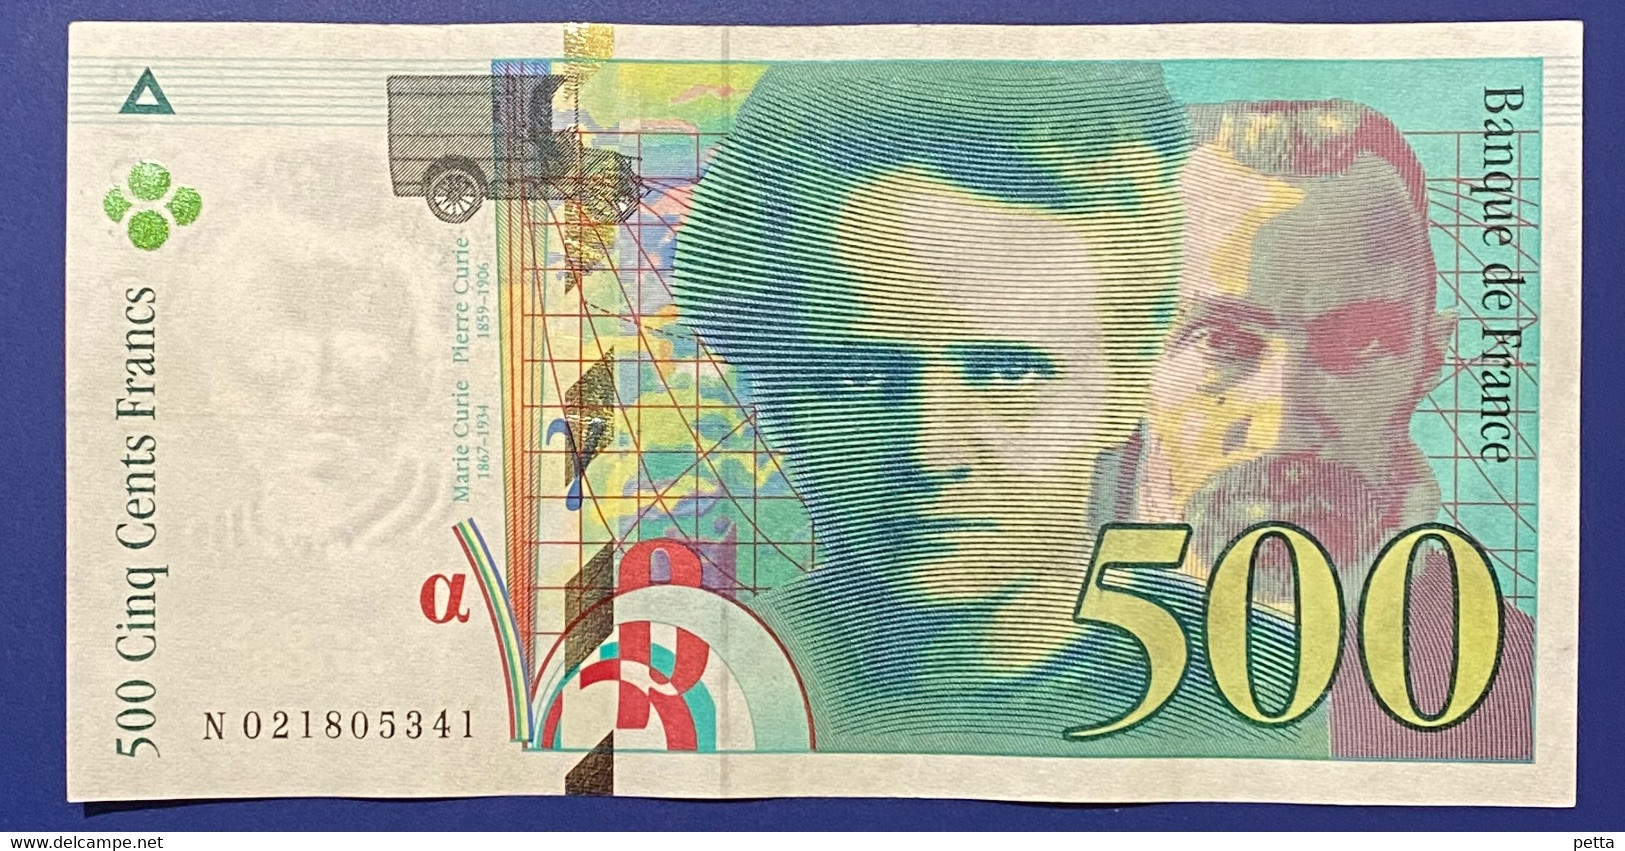 Billet De 500 Francs Pierre Et Marie Curie De 1994 / Alph N 021805341 / Vendu En L’état - 500 F 1994-2000 ''Pierre Et Marie Curie''